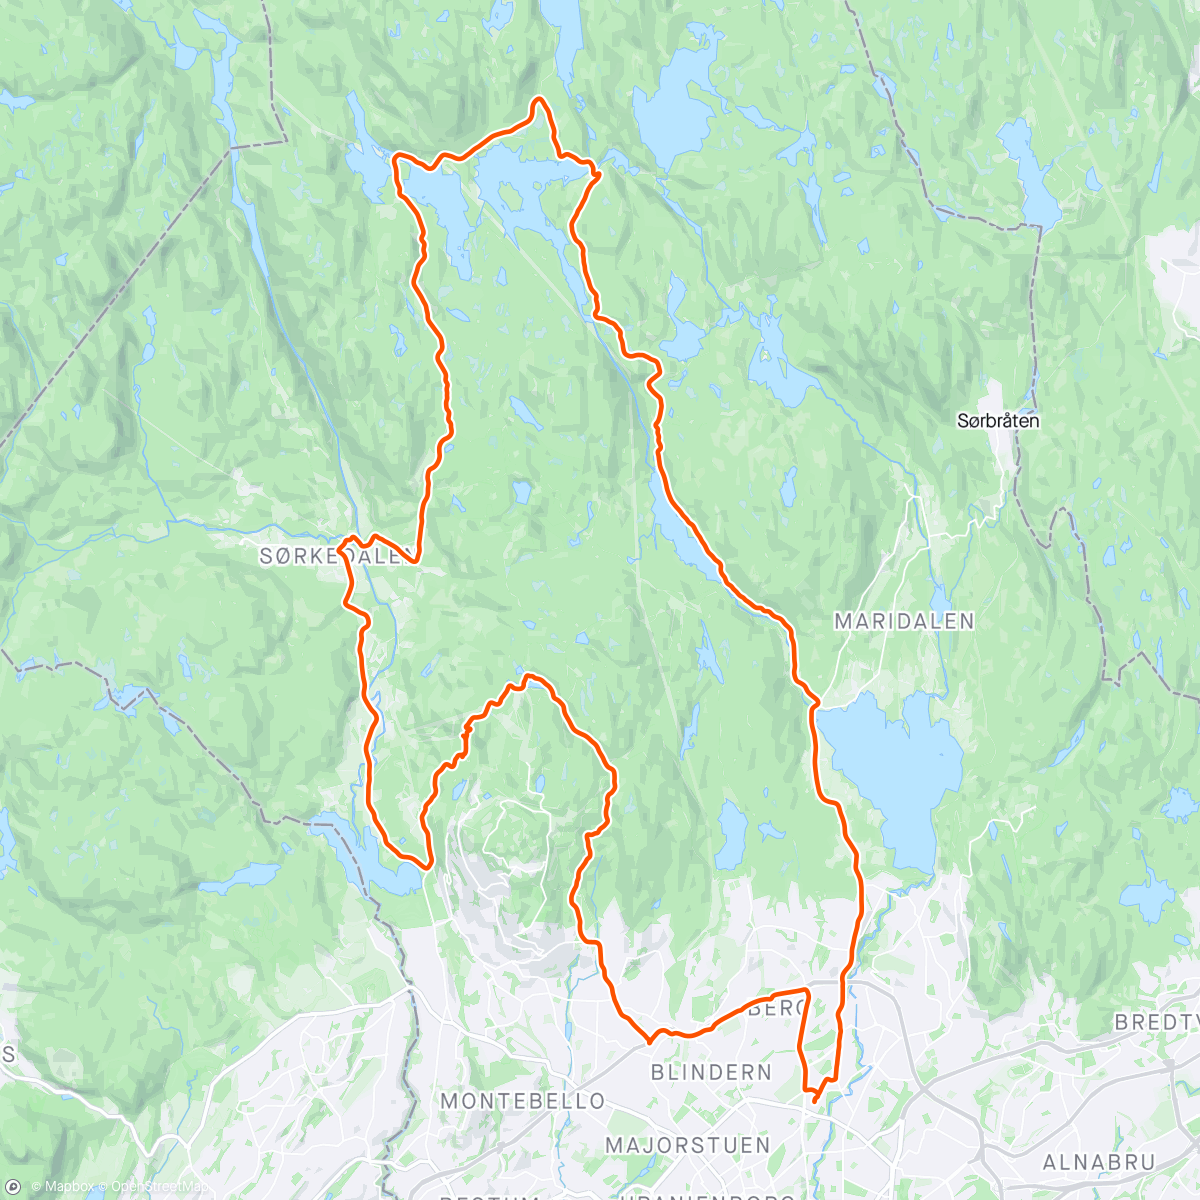 Mappa dell'attività Lunch Ride - Sagene-Kikut-Sørkedalen-Bogstad-Tryvannstua-Sagene... 🌤🚴‍♂️😎
Stikker'n Bogstad-Tryvannstua var ikke et sjakktrekk - skiløype på toppen Wyller til Stua gitt! 🤣